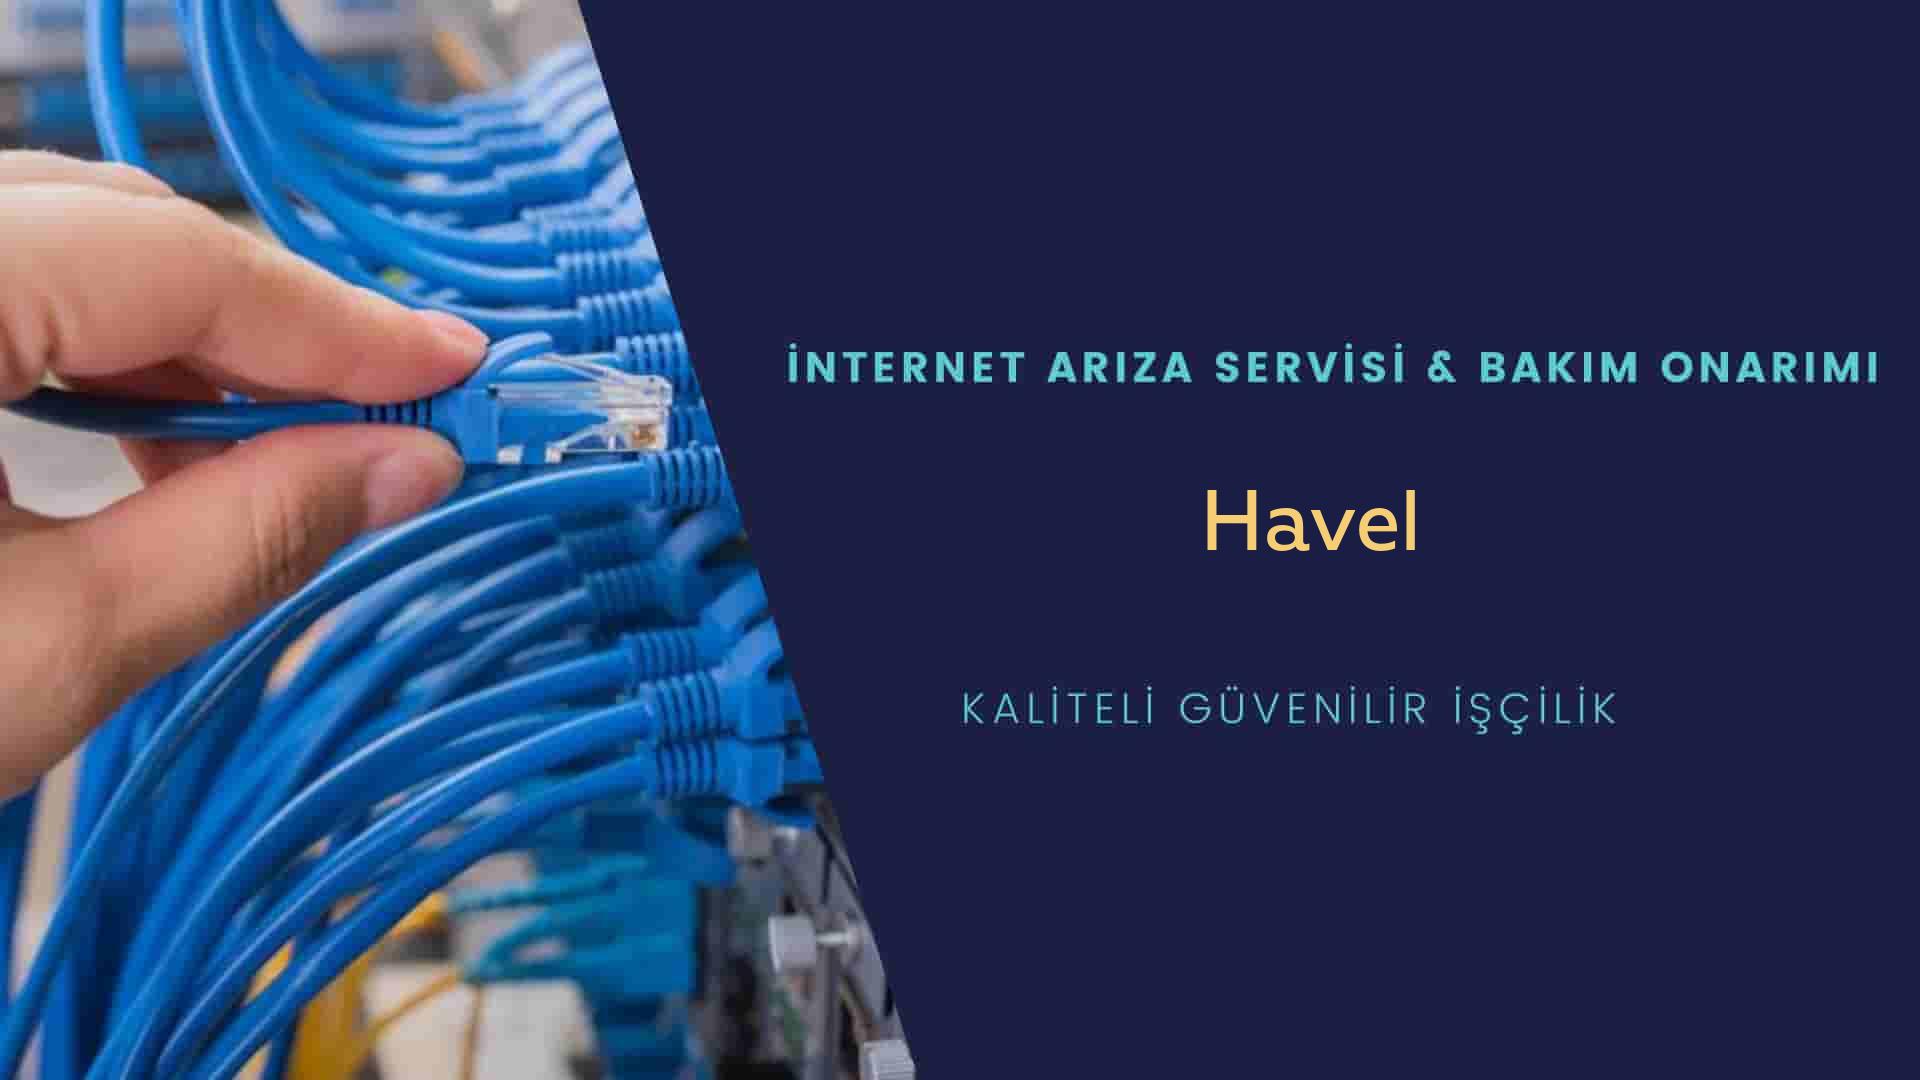 Havel  internet kablosu çekimi yapan yerler veya elektrikçiler mi? arıyorsunuz doğru yerdesiniz o zaman sizlere 7/24 yardımcı olacak profesyonel ustalarımız bir telefon kadar yakındır size.